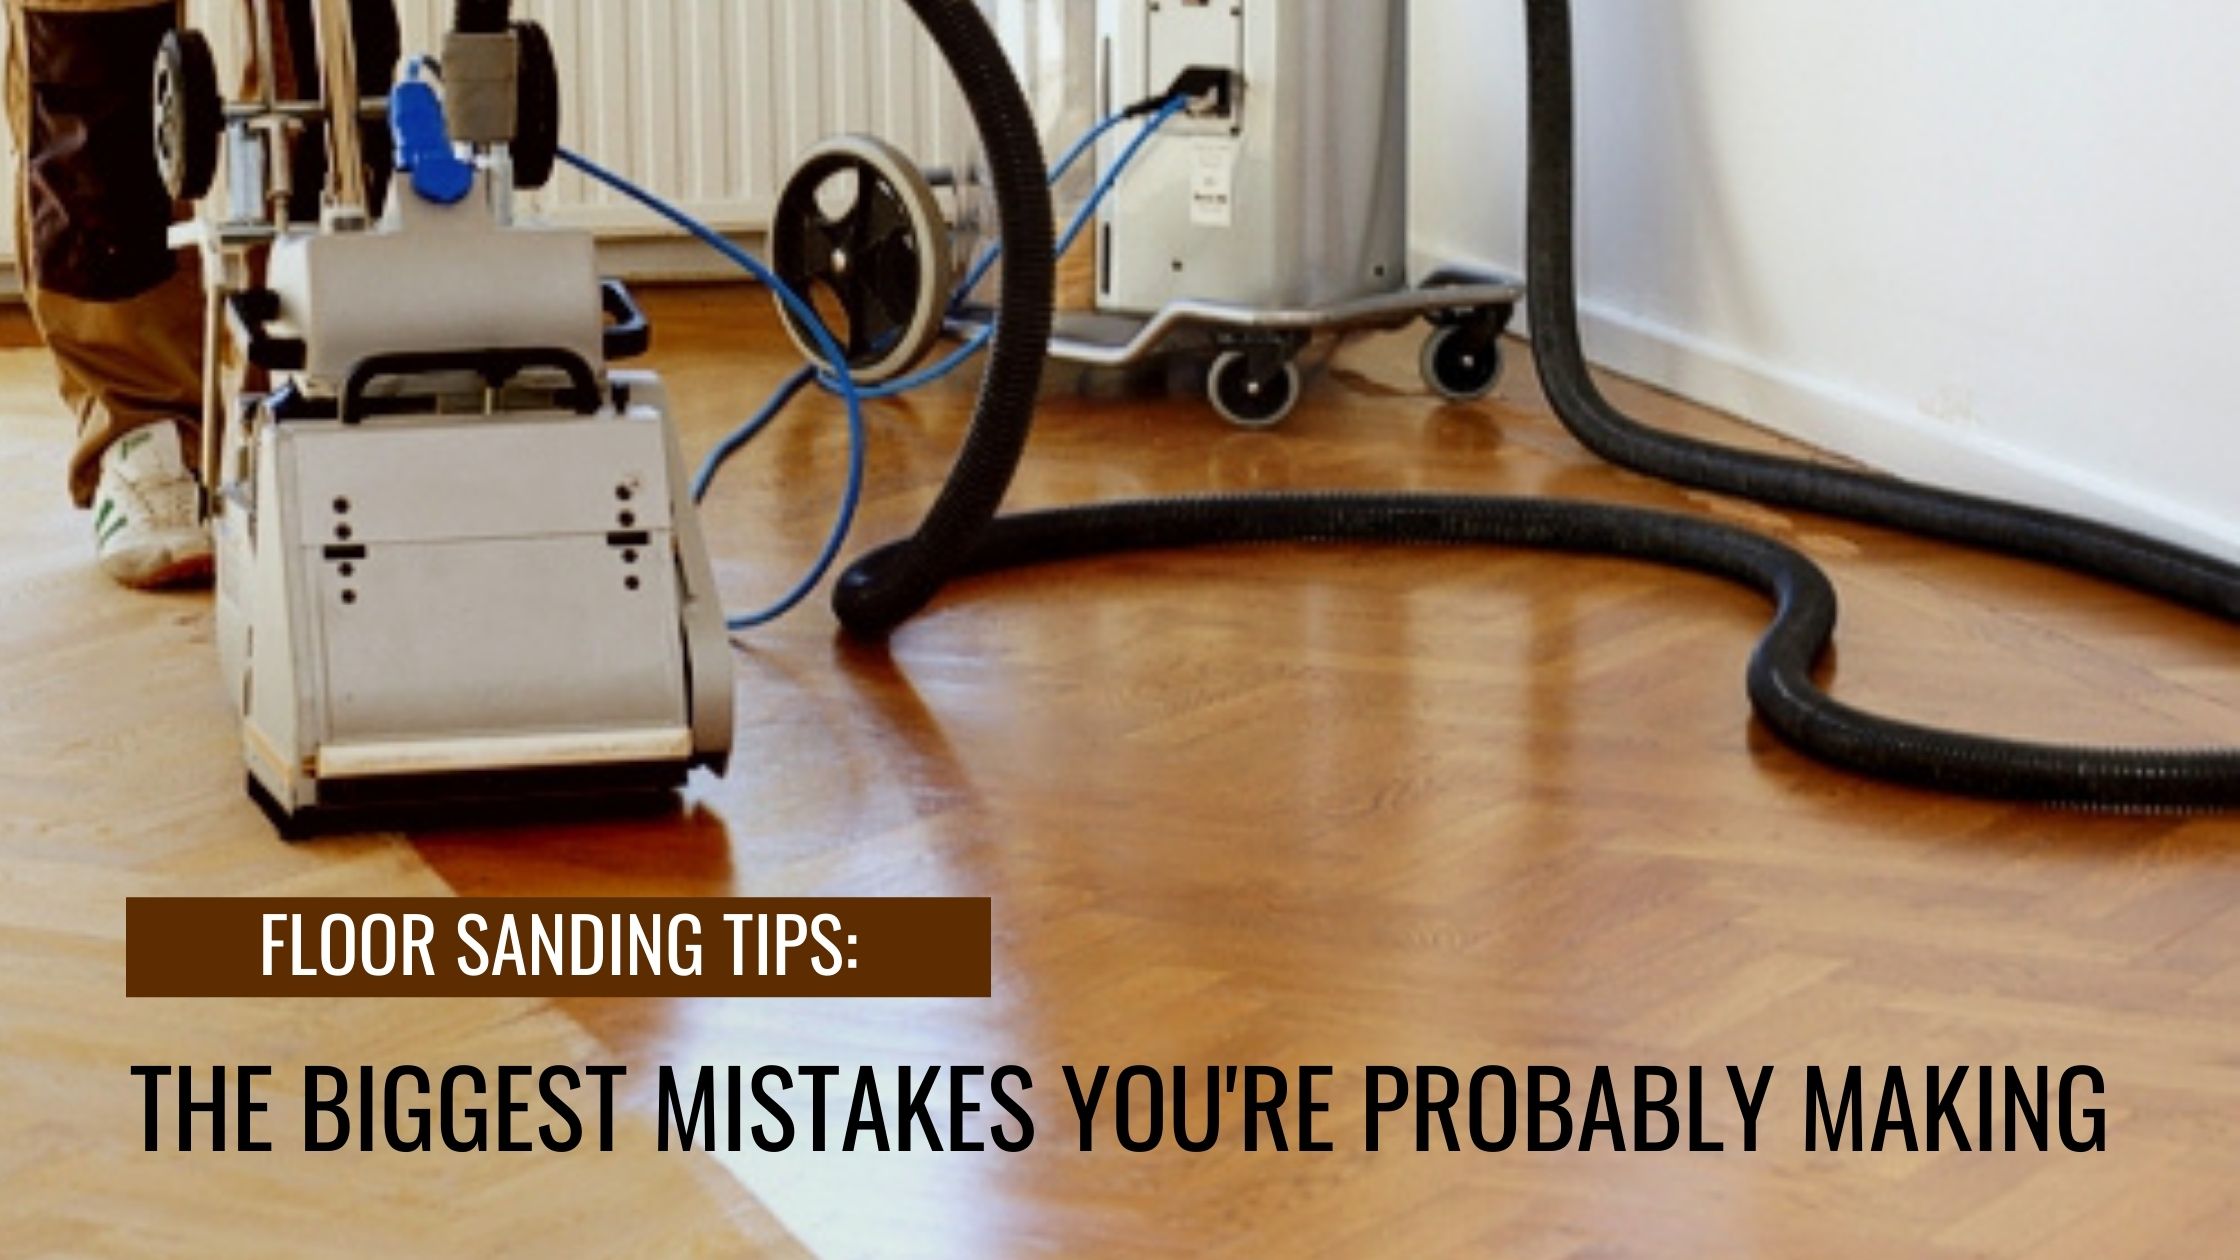 Floor sanding tips